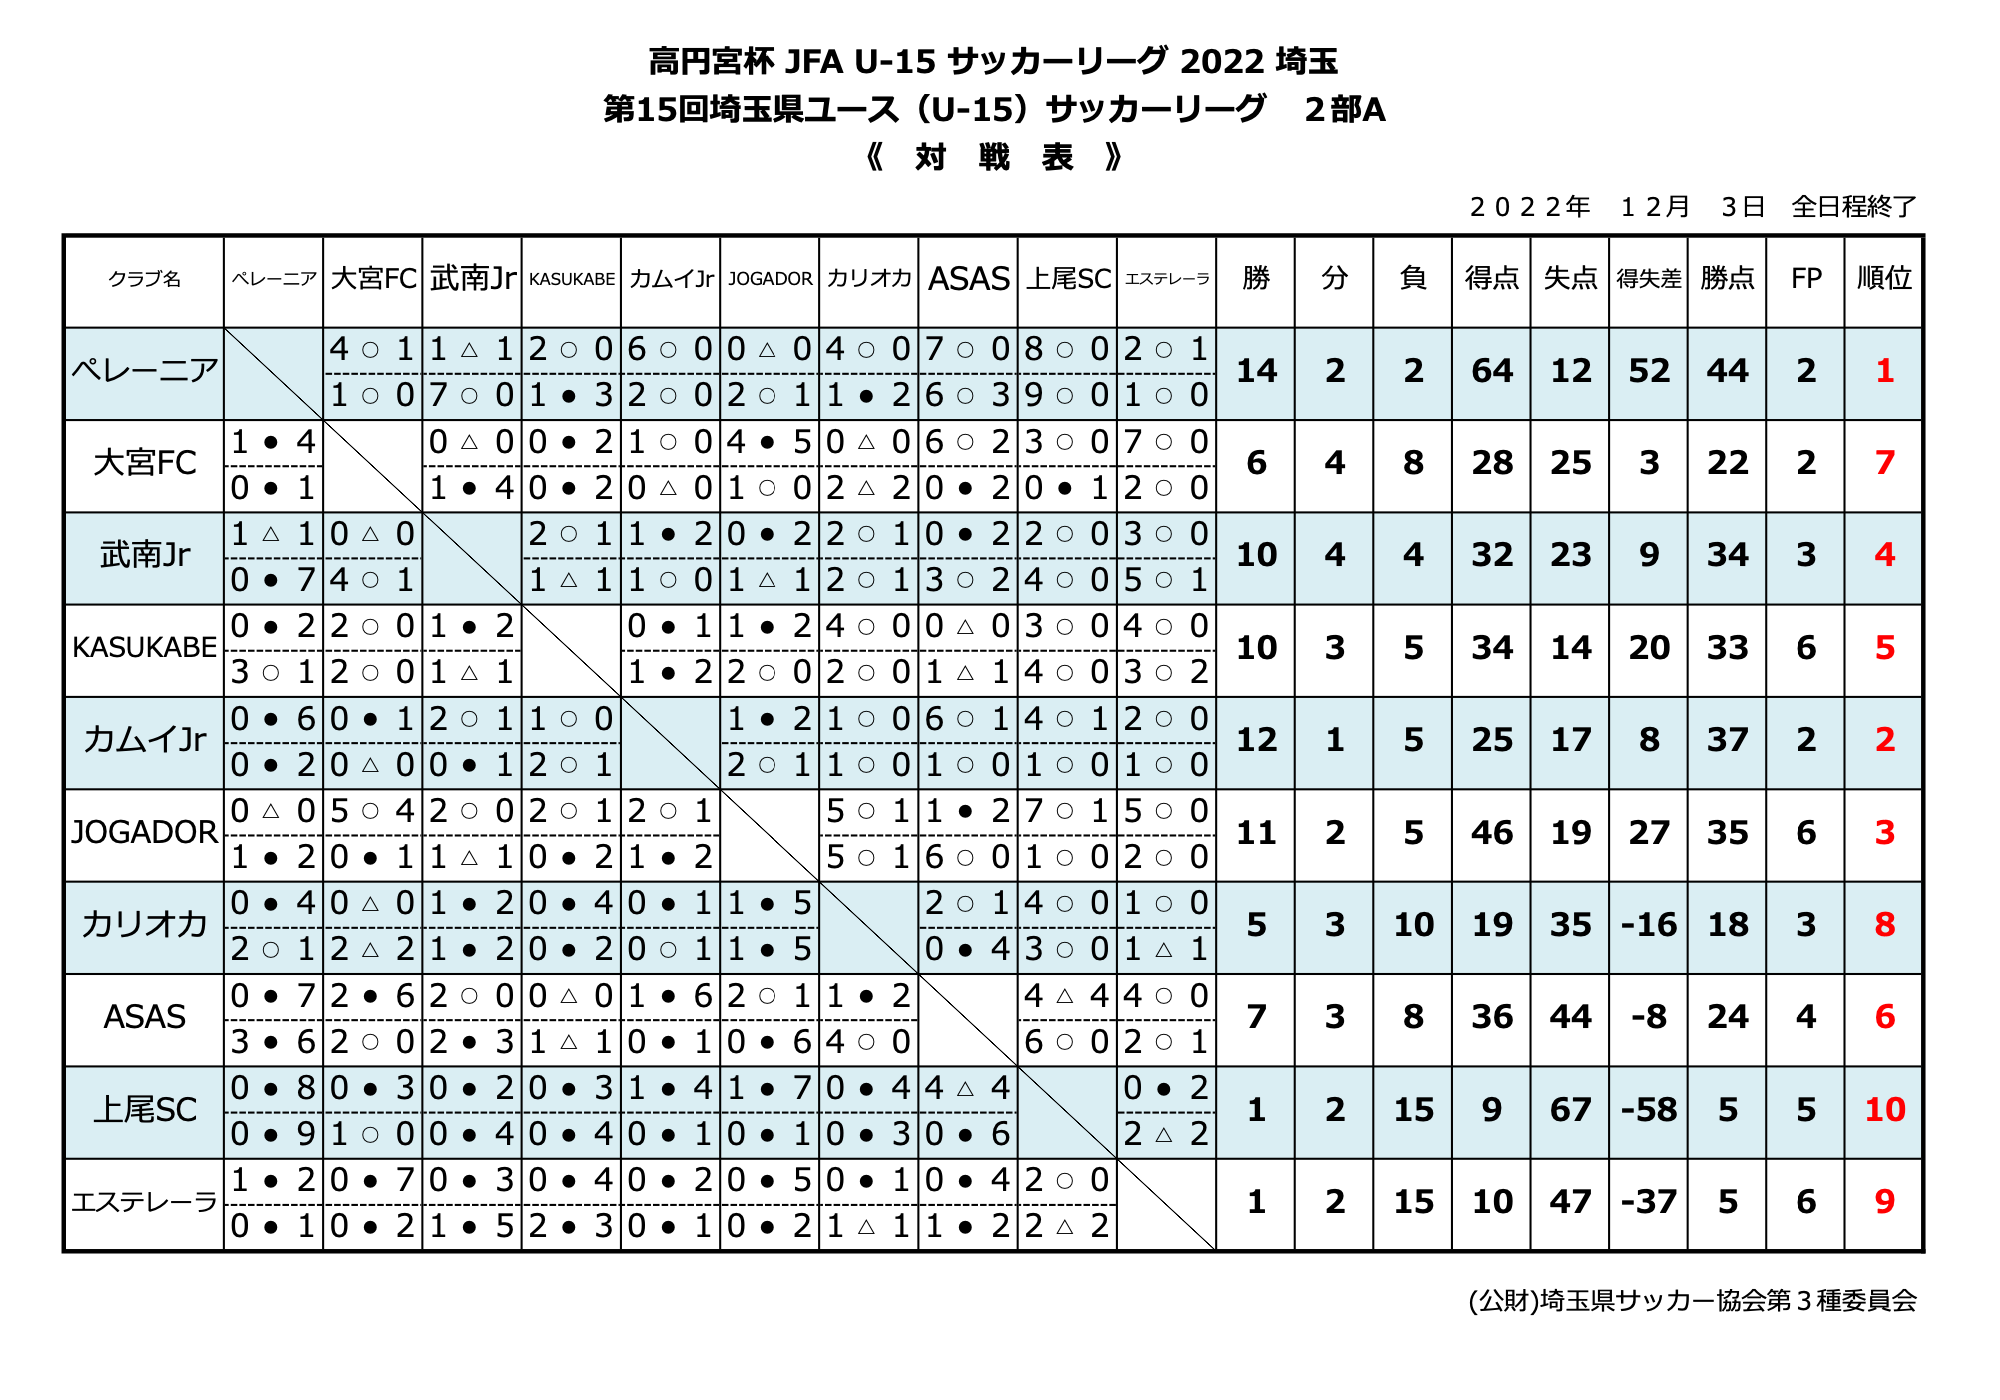 高円宮杯JFAU-15 サッカーリーグ2022年埼玉-第15回埼玉県ユース（U-15）サッカーリーグ2部A